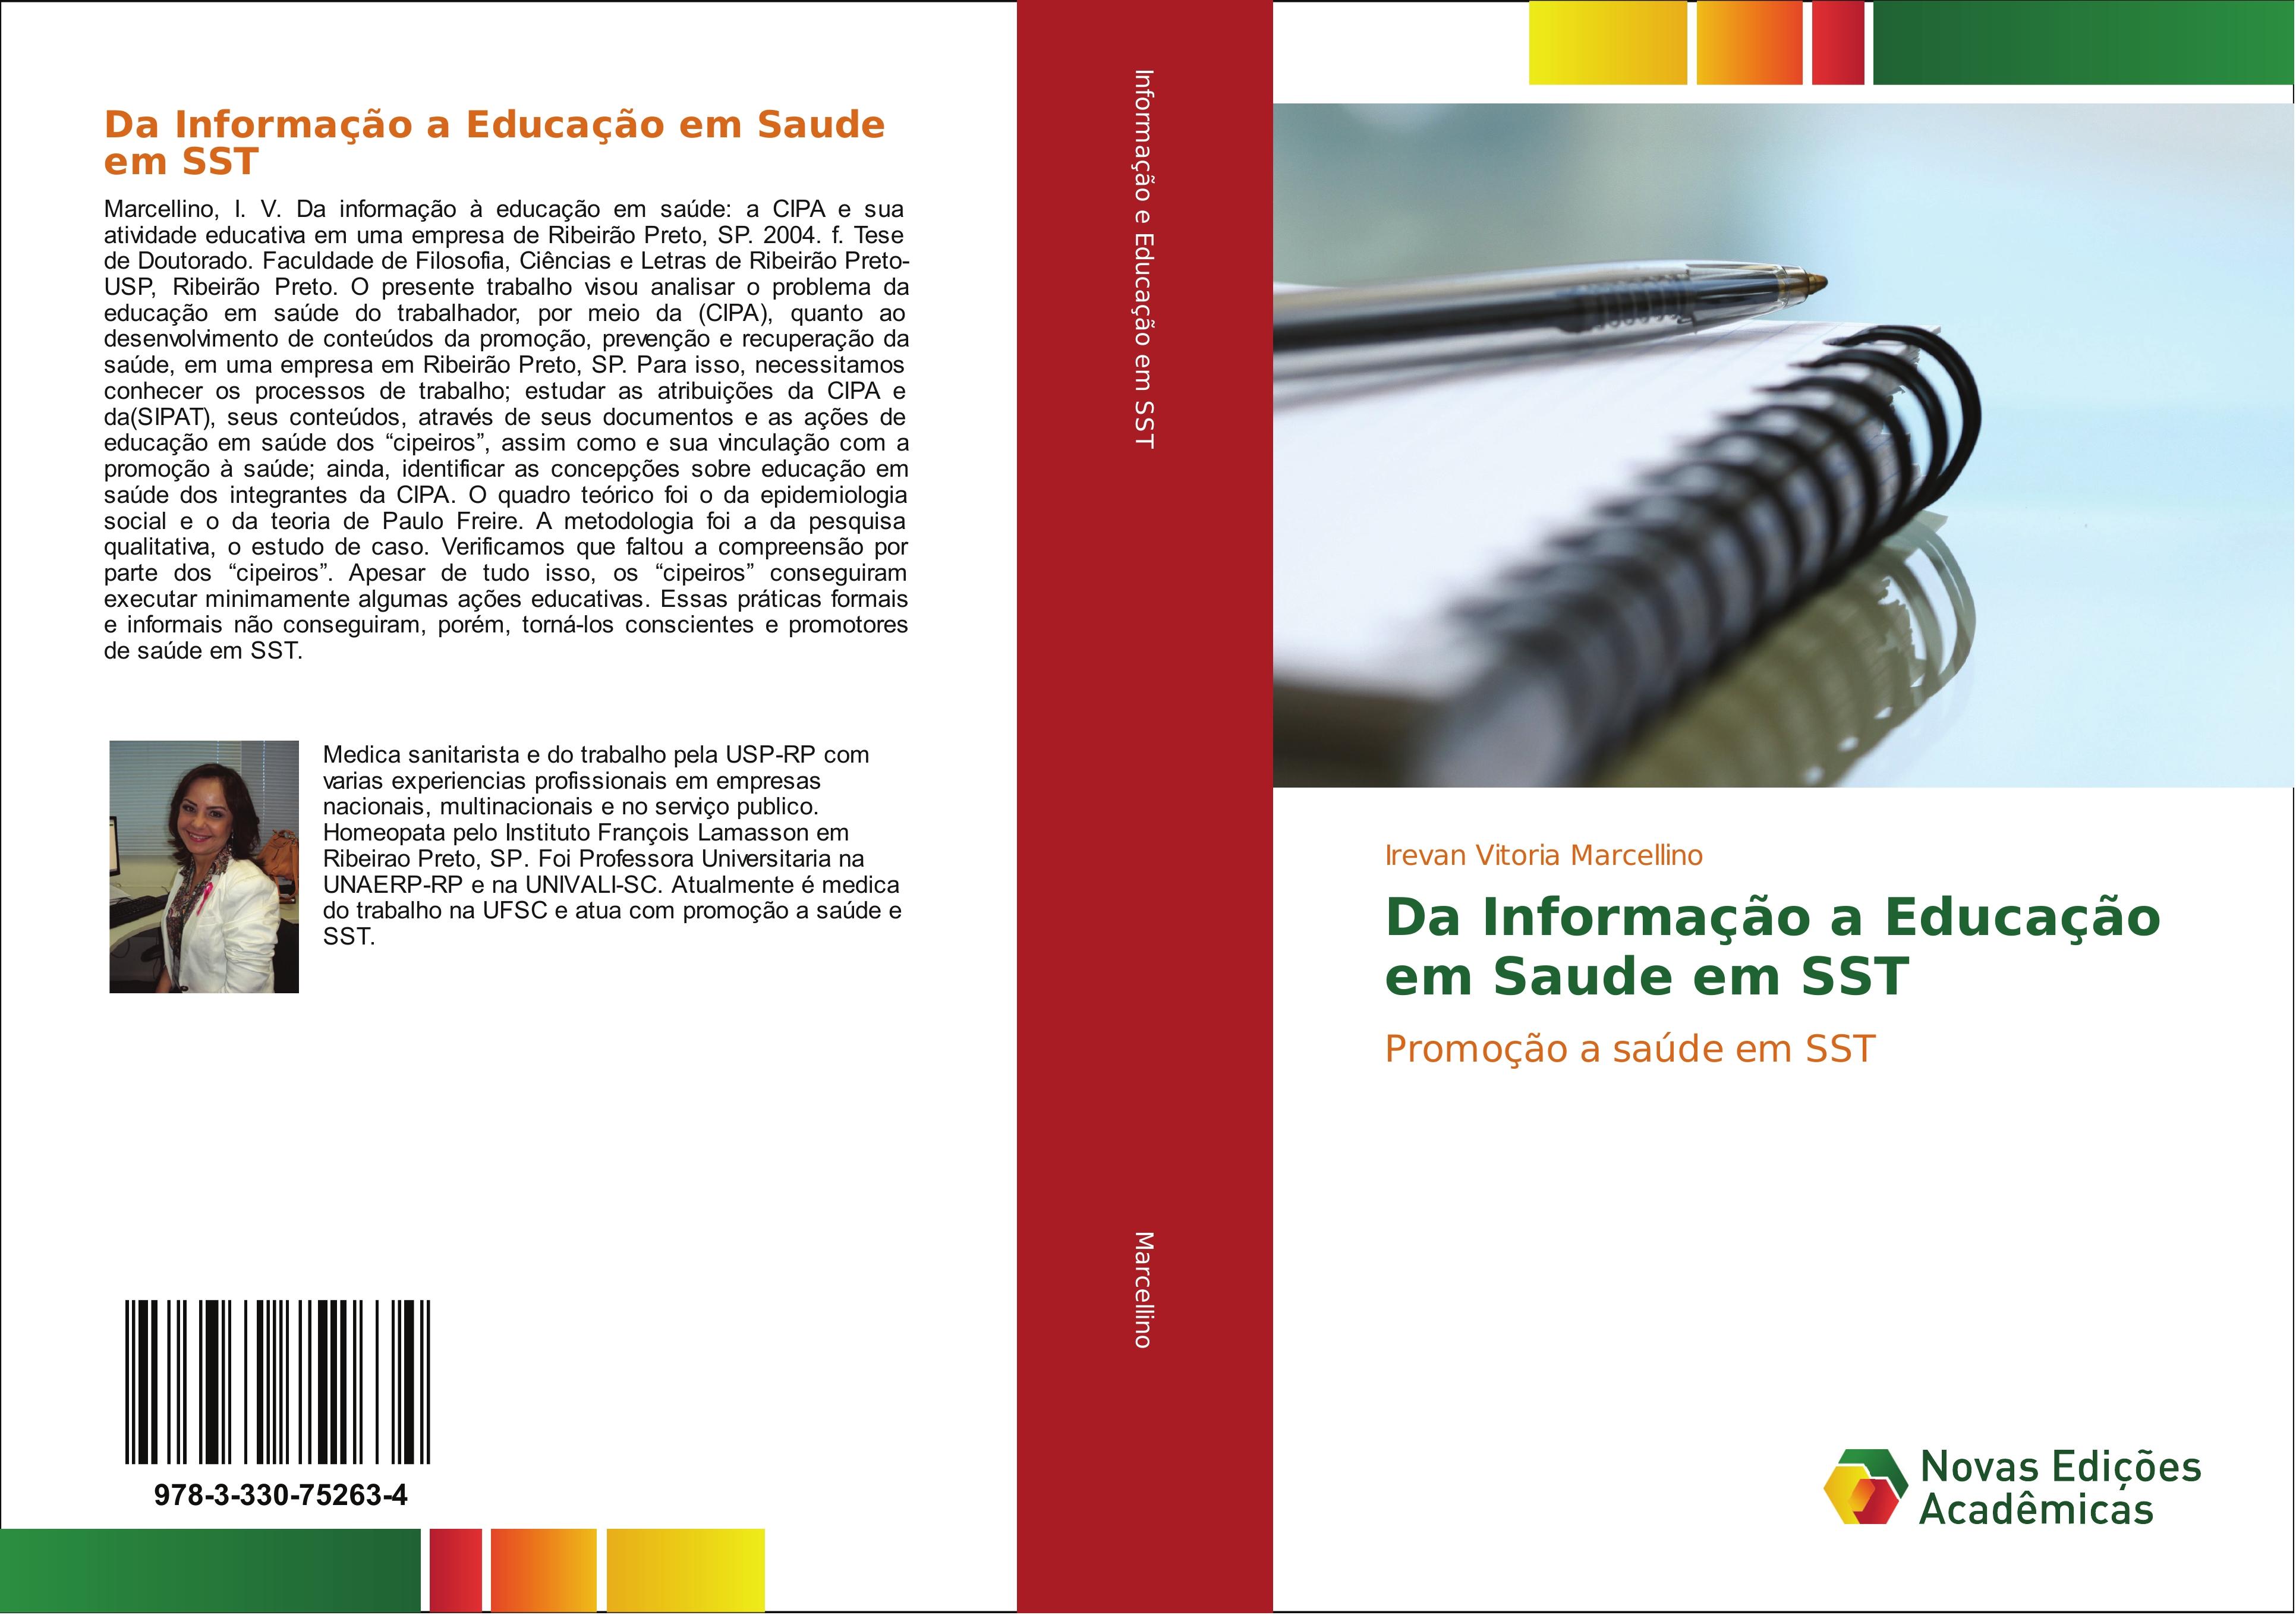 Da Informação a Educação em Saude em SST - Irevan Vitoria Marcellino